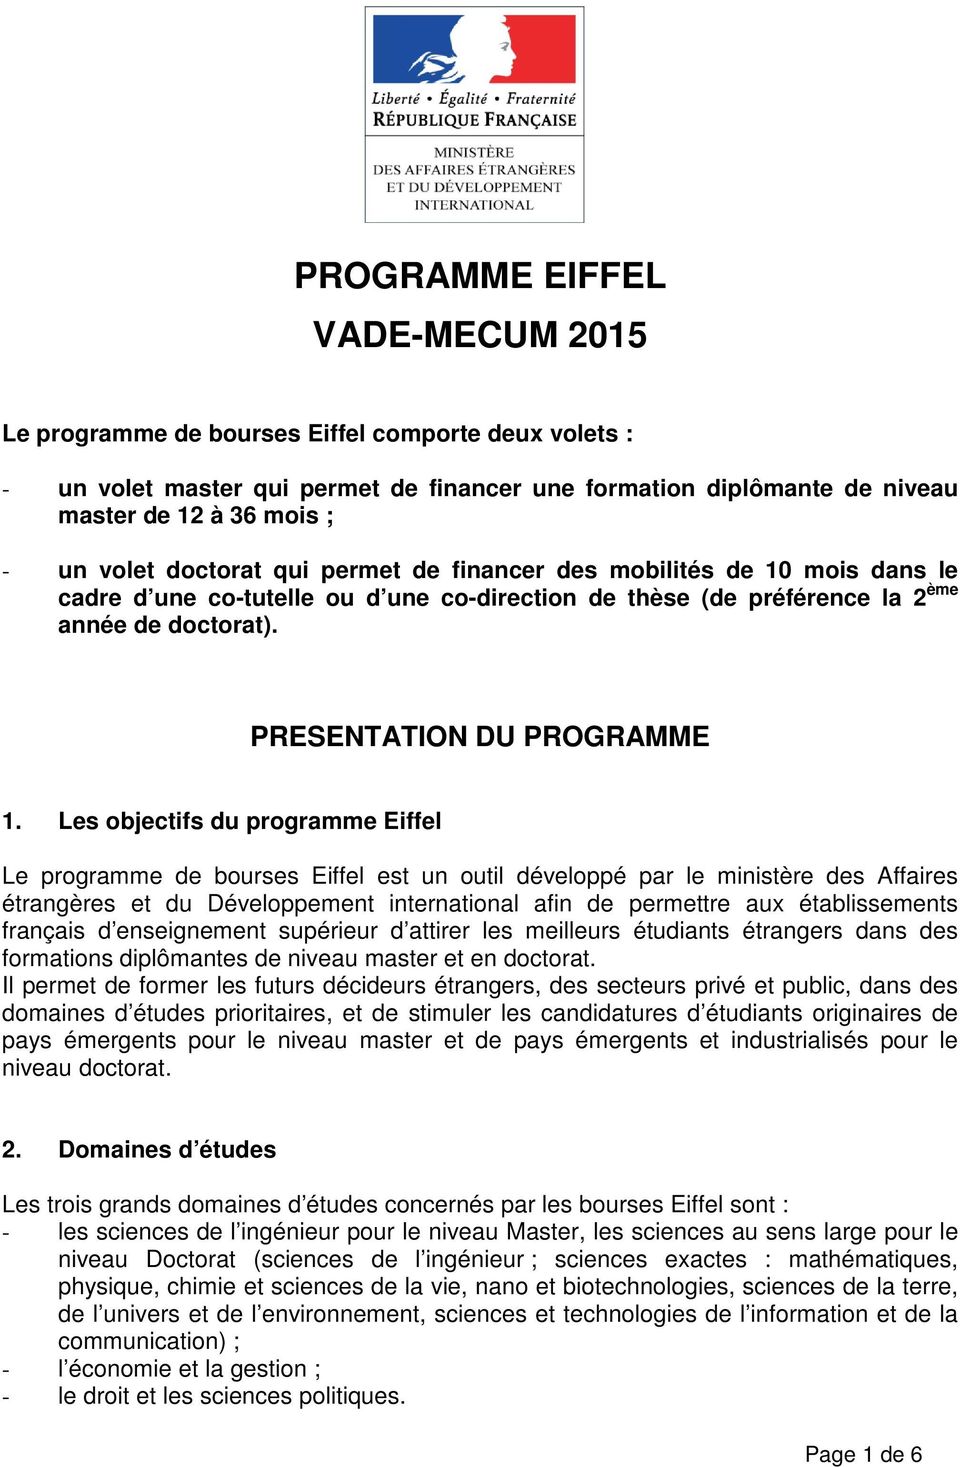 Les objectifs du programme Eiffel Le programme de bourses Eiffel est un outil développé par le ministère des Affaires étrangères et du Développement international afin de permettre aux établissements